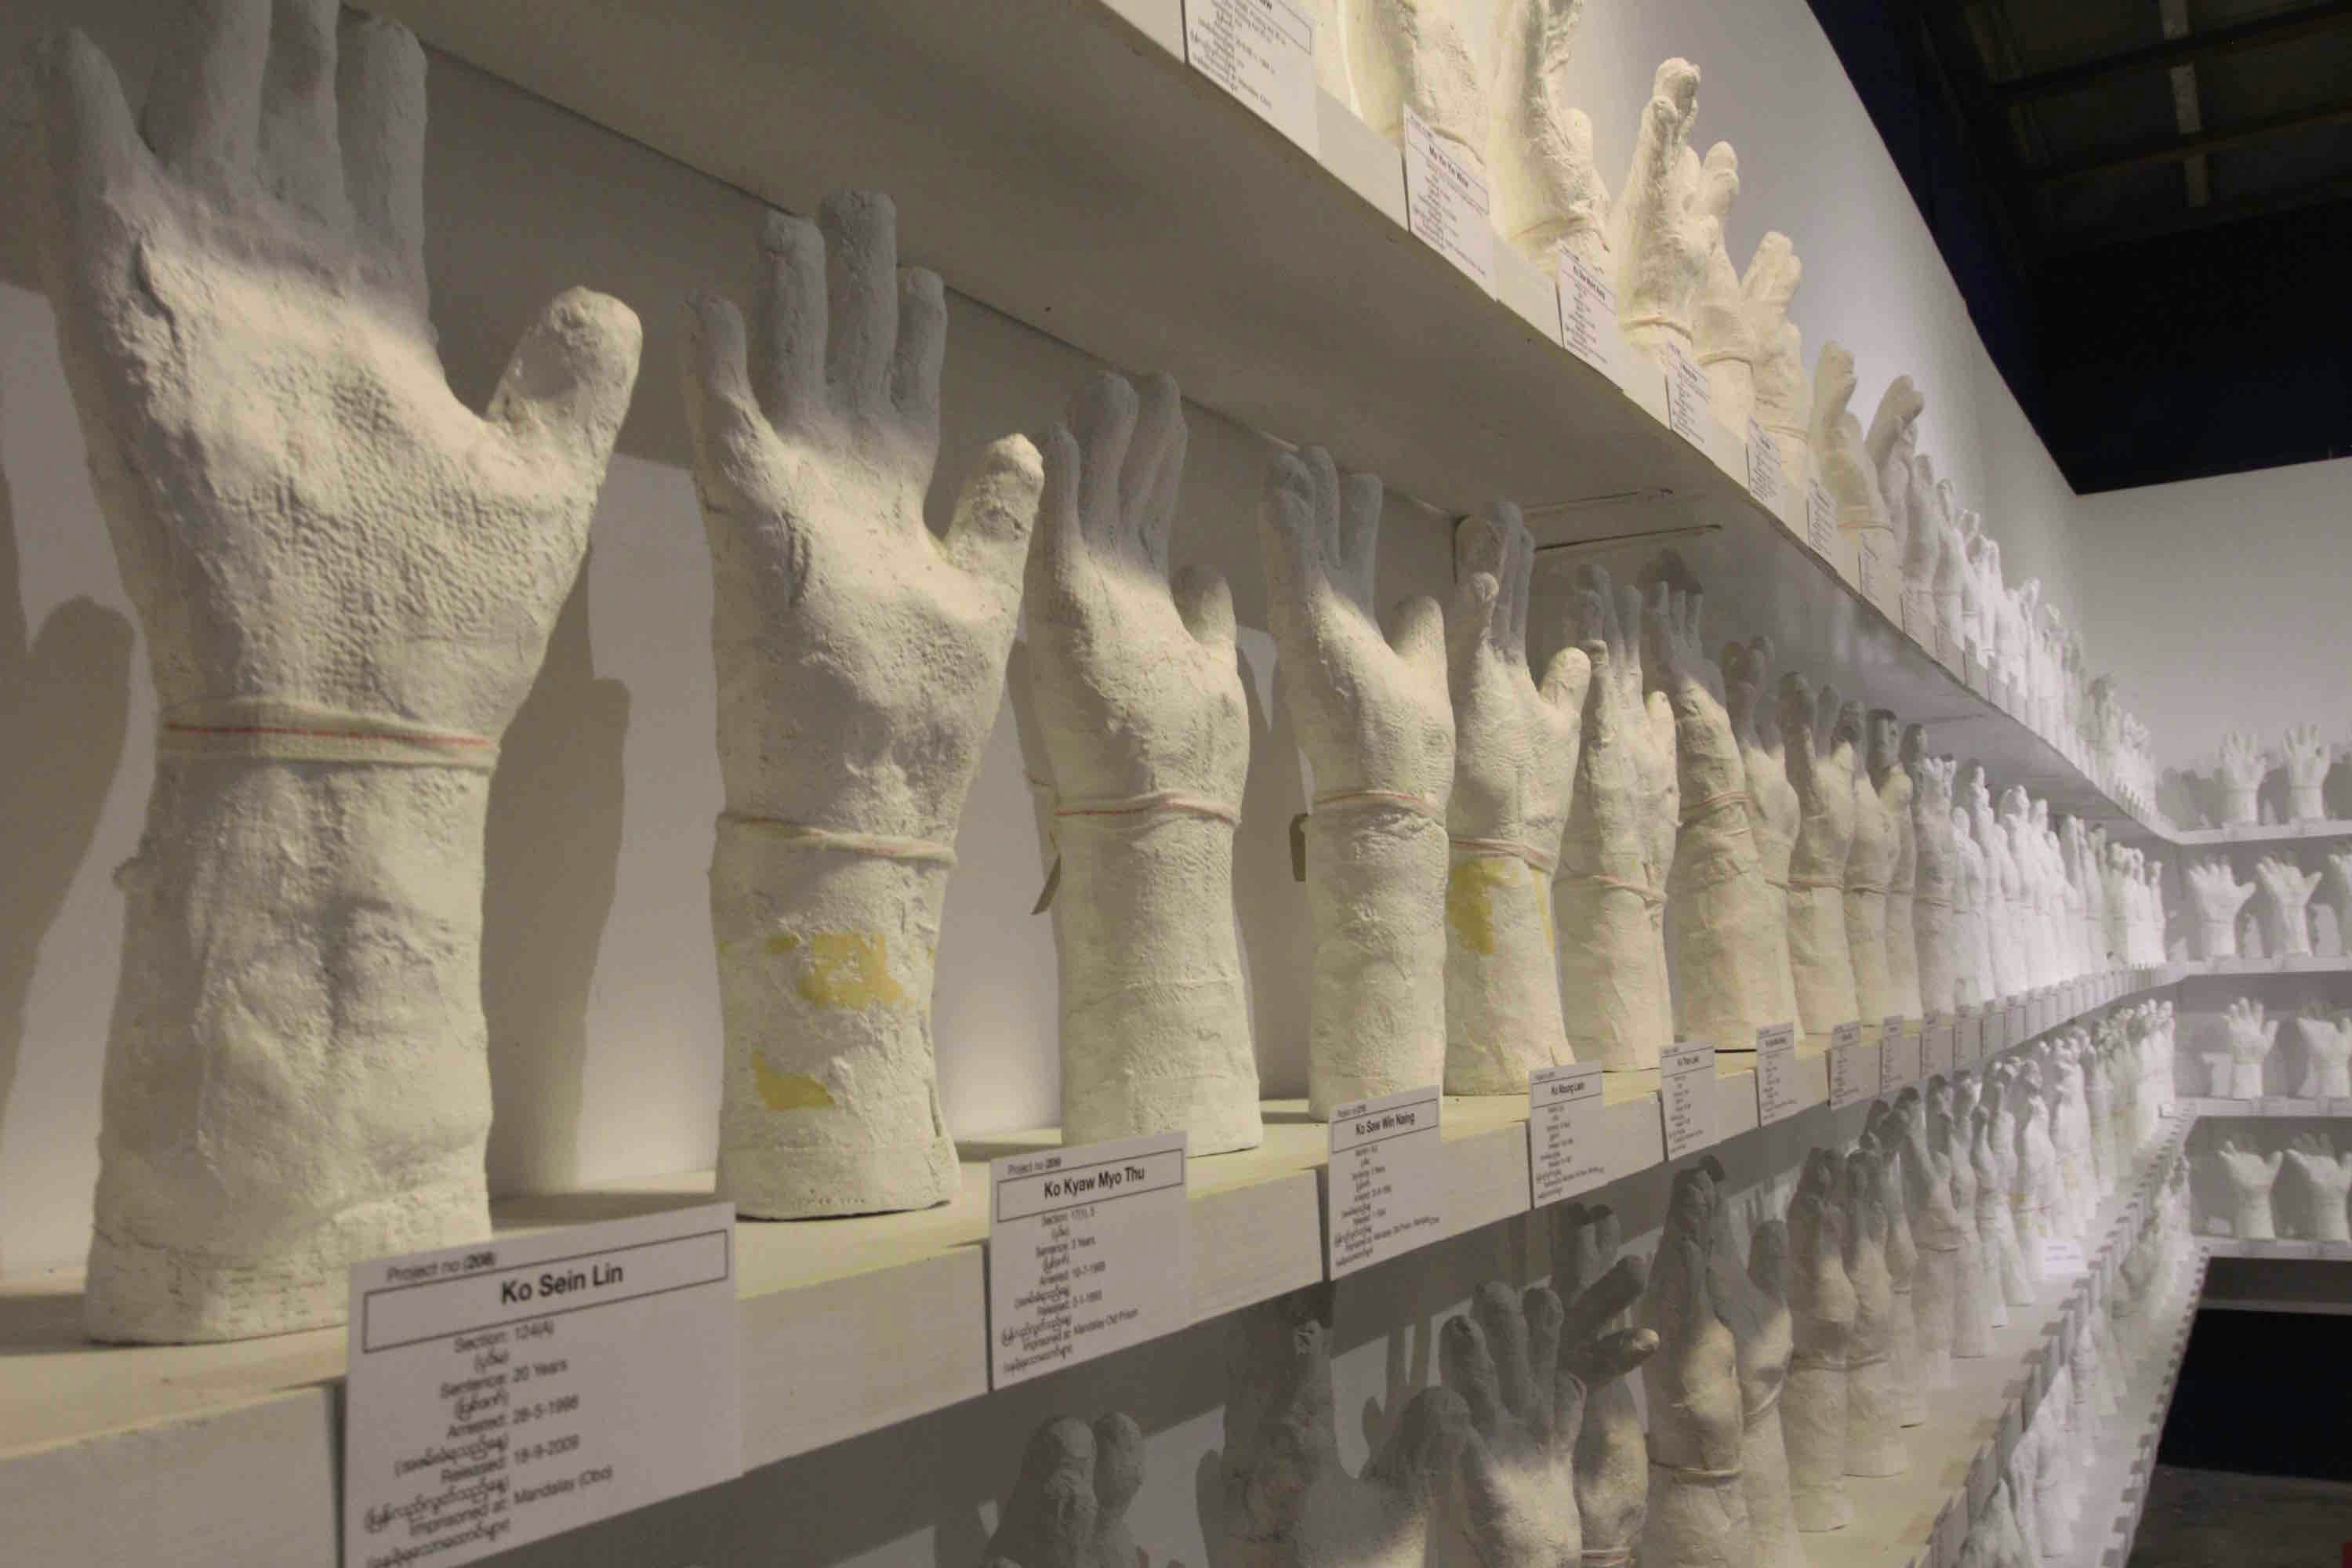 Shelves of plaster-casted hands, all raising fingertips to the sky.